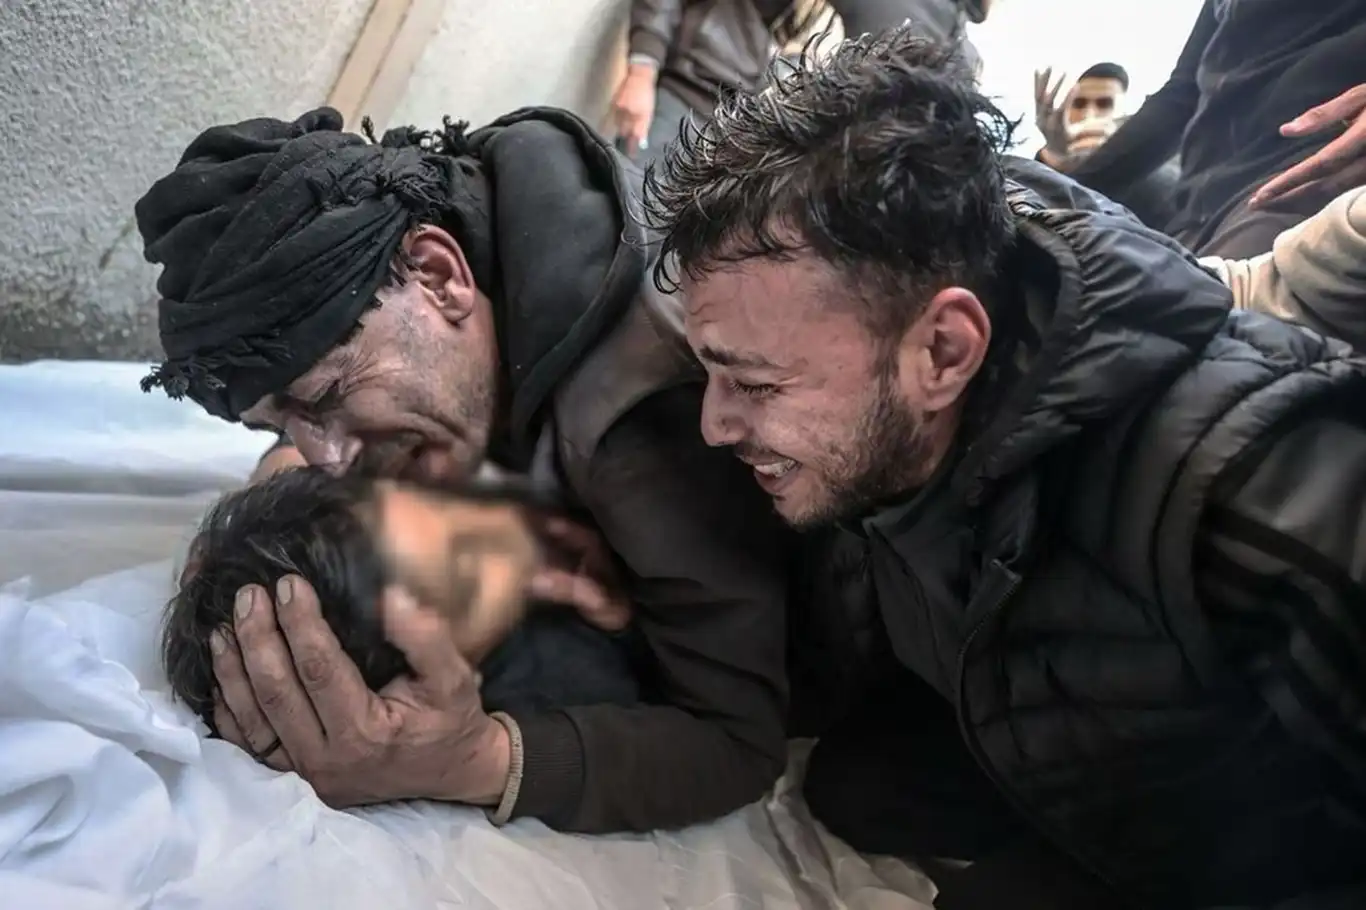 Siyonist rejim kadın ve çocukları vurdu: 19 şehid